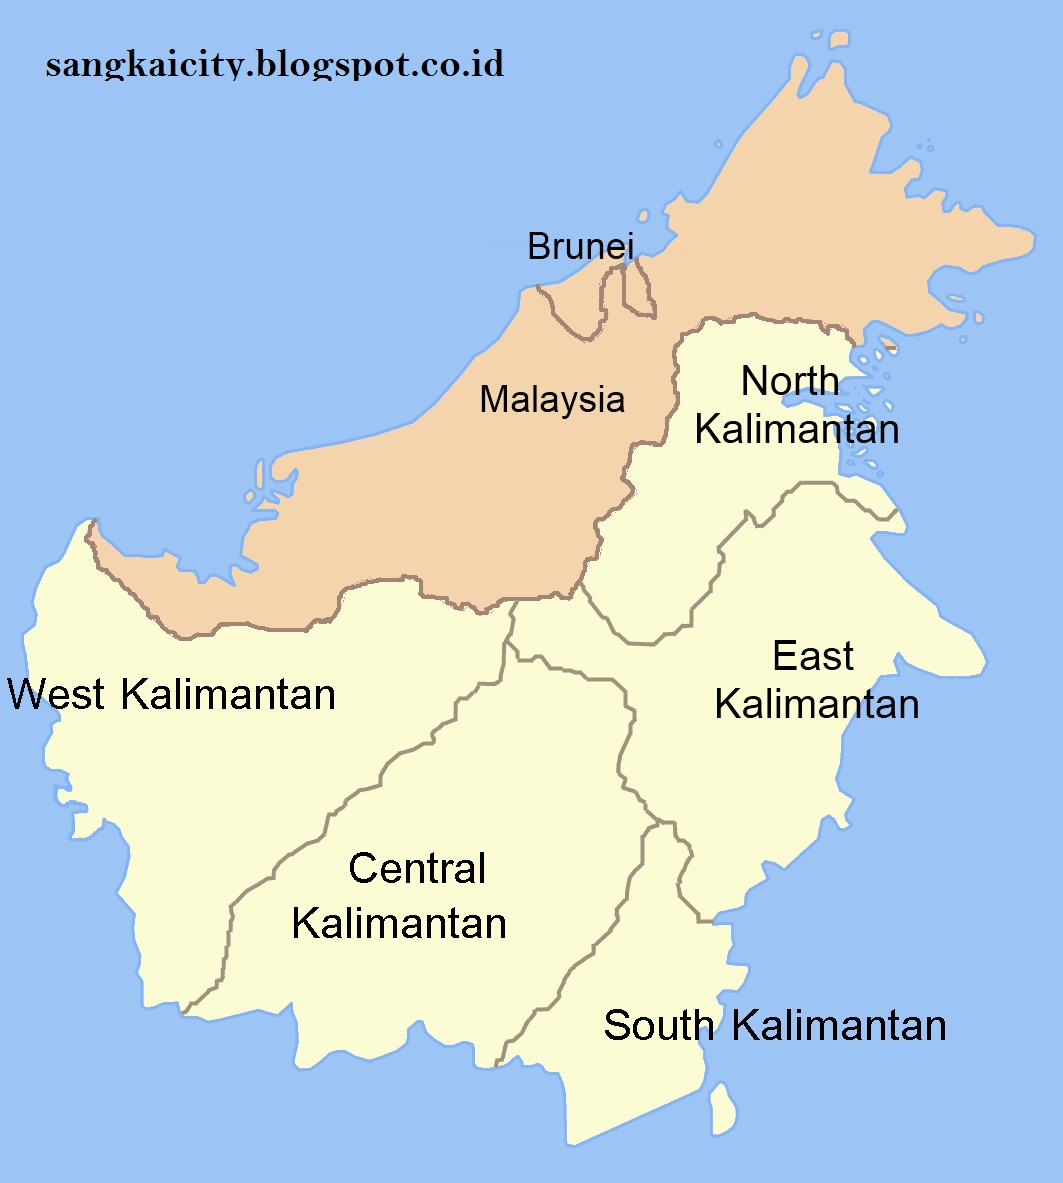 Penyebutan Borneo  Untuk Pulau Kalimantan  asal usul 